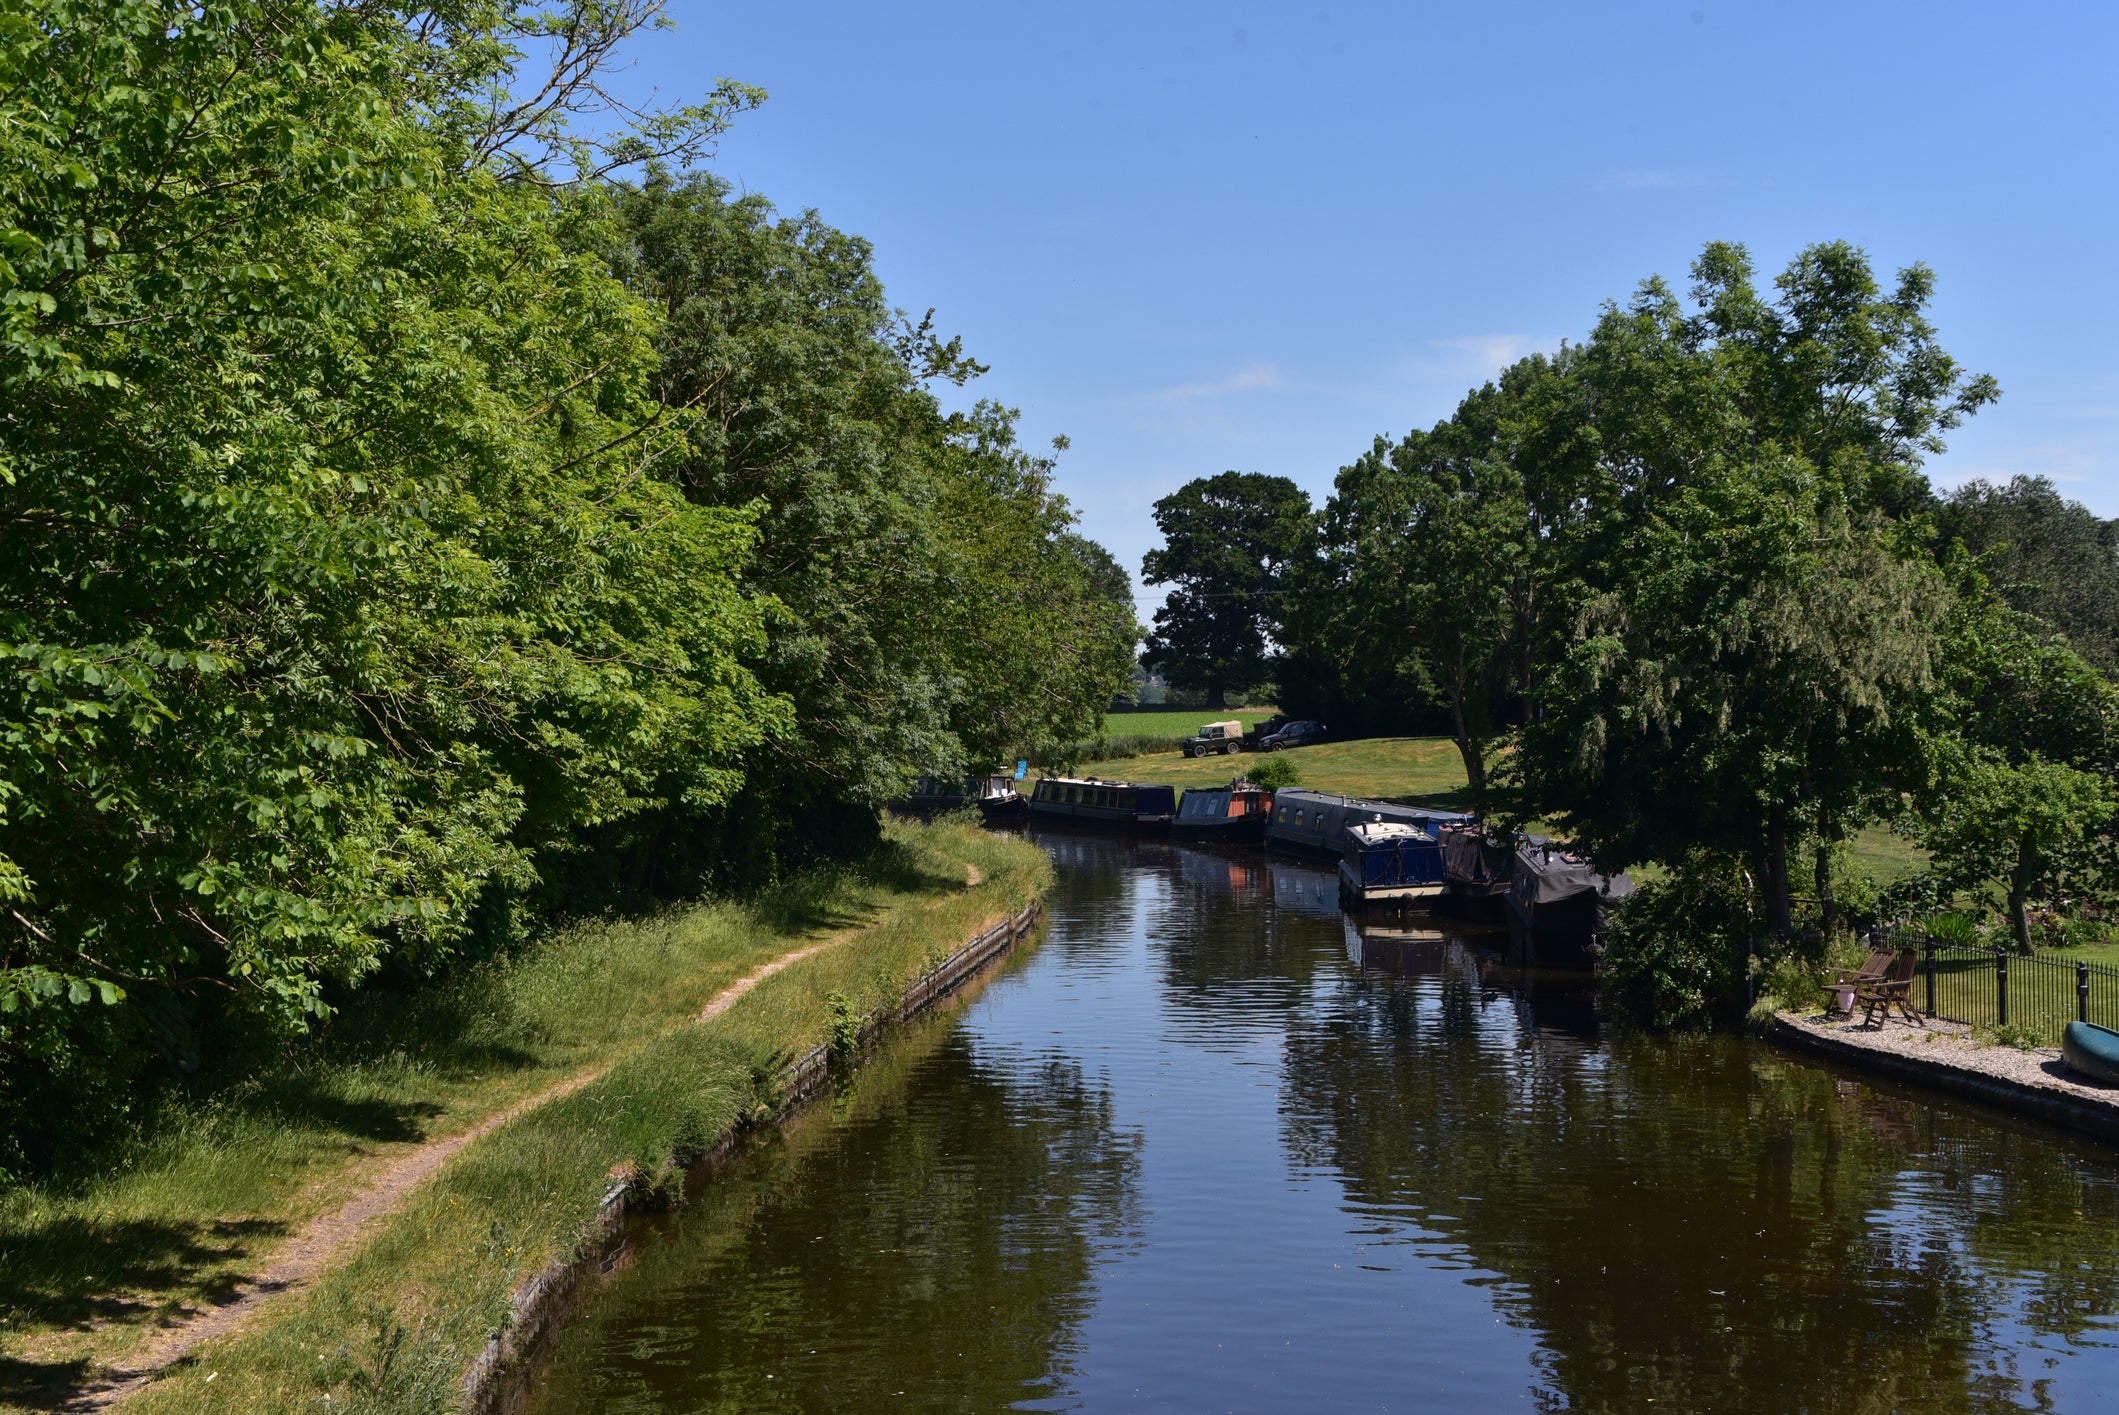 The Llangollen Canal near Shropshire